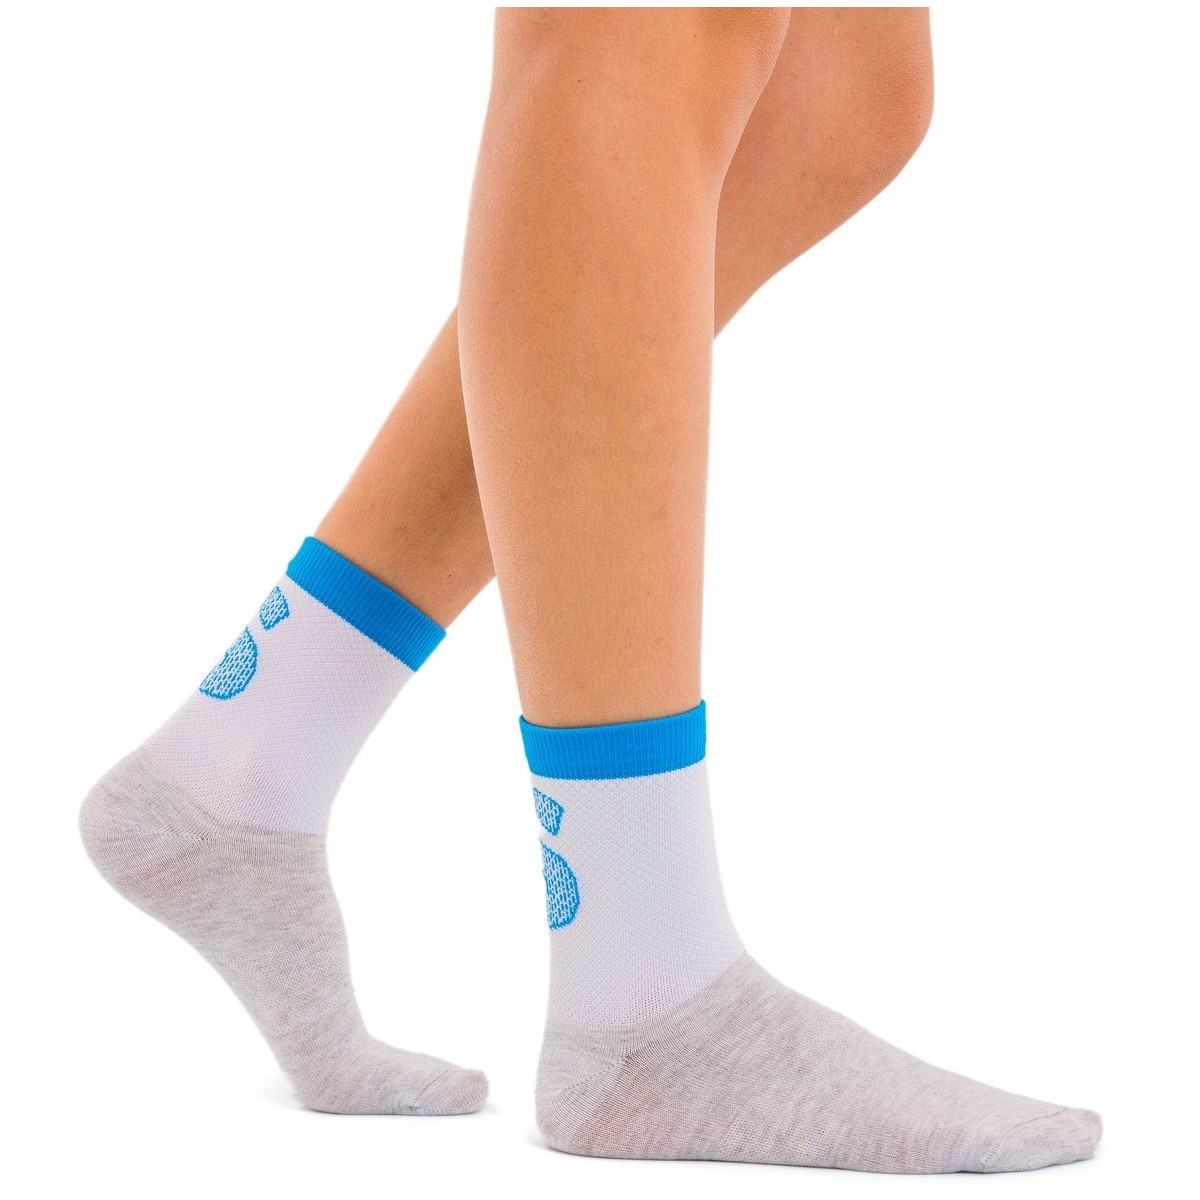 SilverSkin FRESH SK028FT01 White/Light blue Unisex socks Thermal